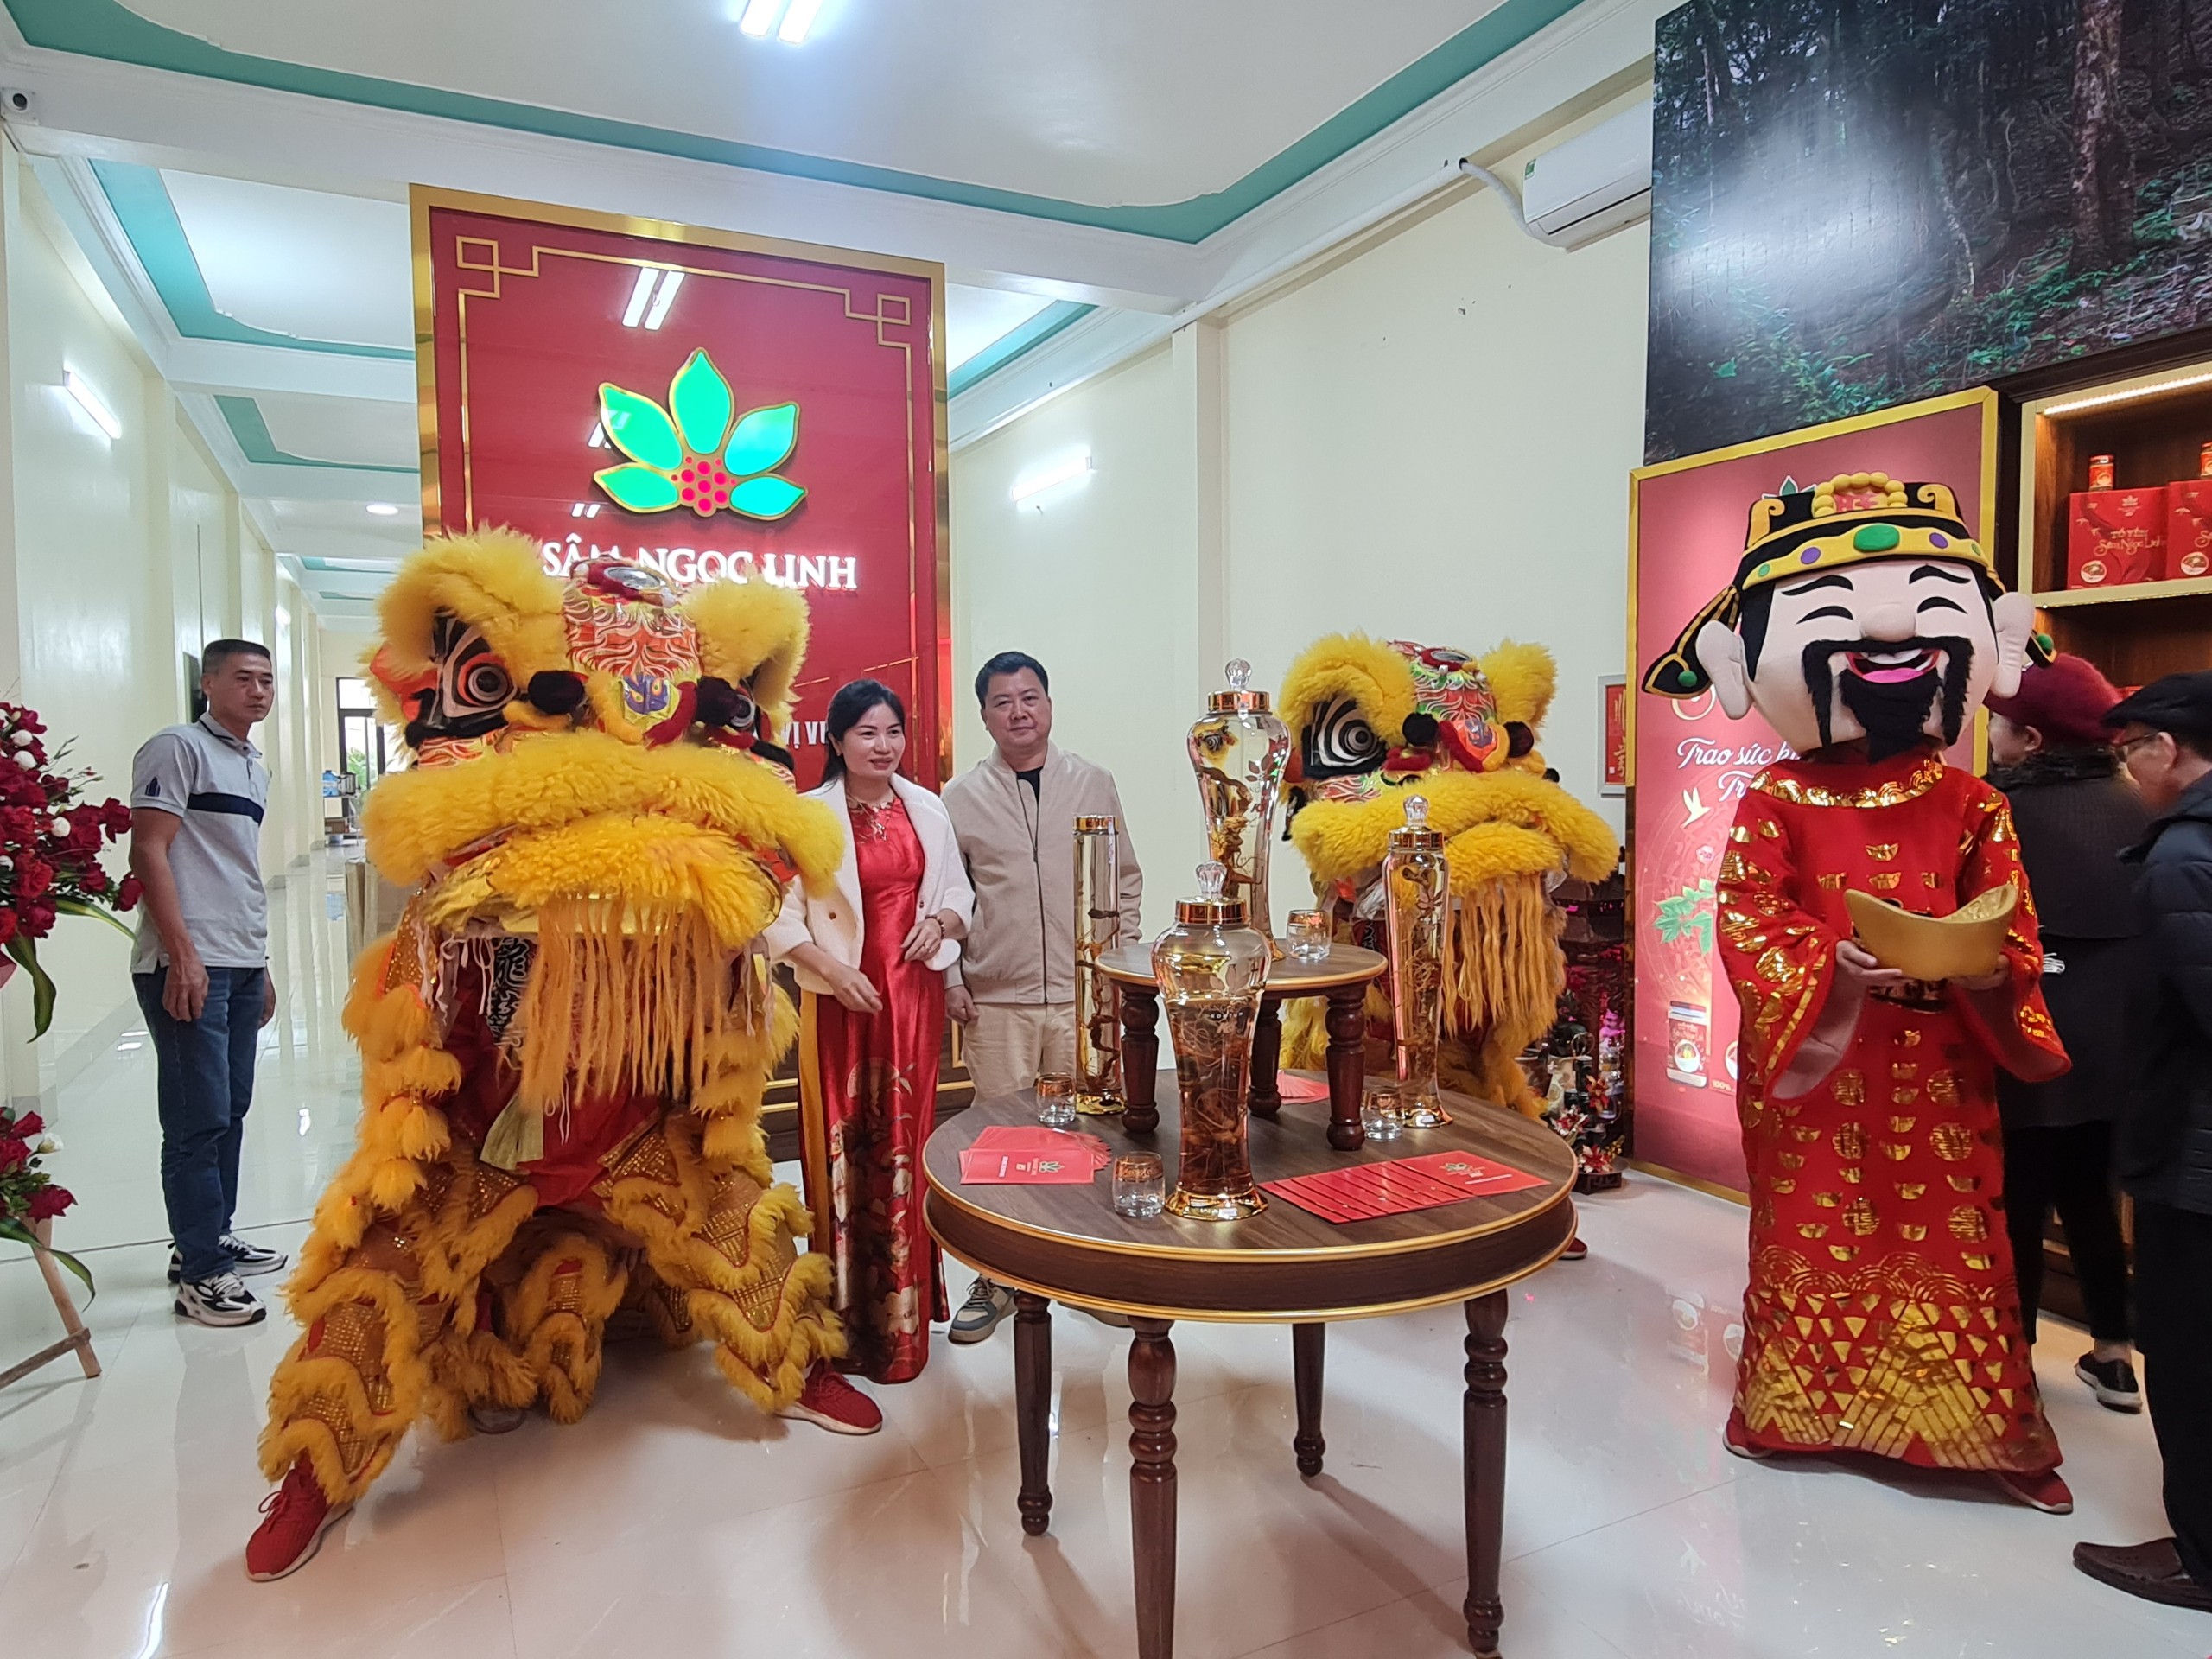 Khách hàng tại Hưng Yên đang trải nghiệm và mua sắm các sản phẩm Sâm Ngọc Linh tại buổi khai trương.